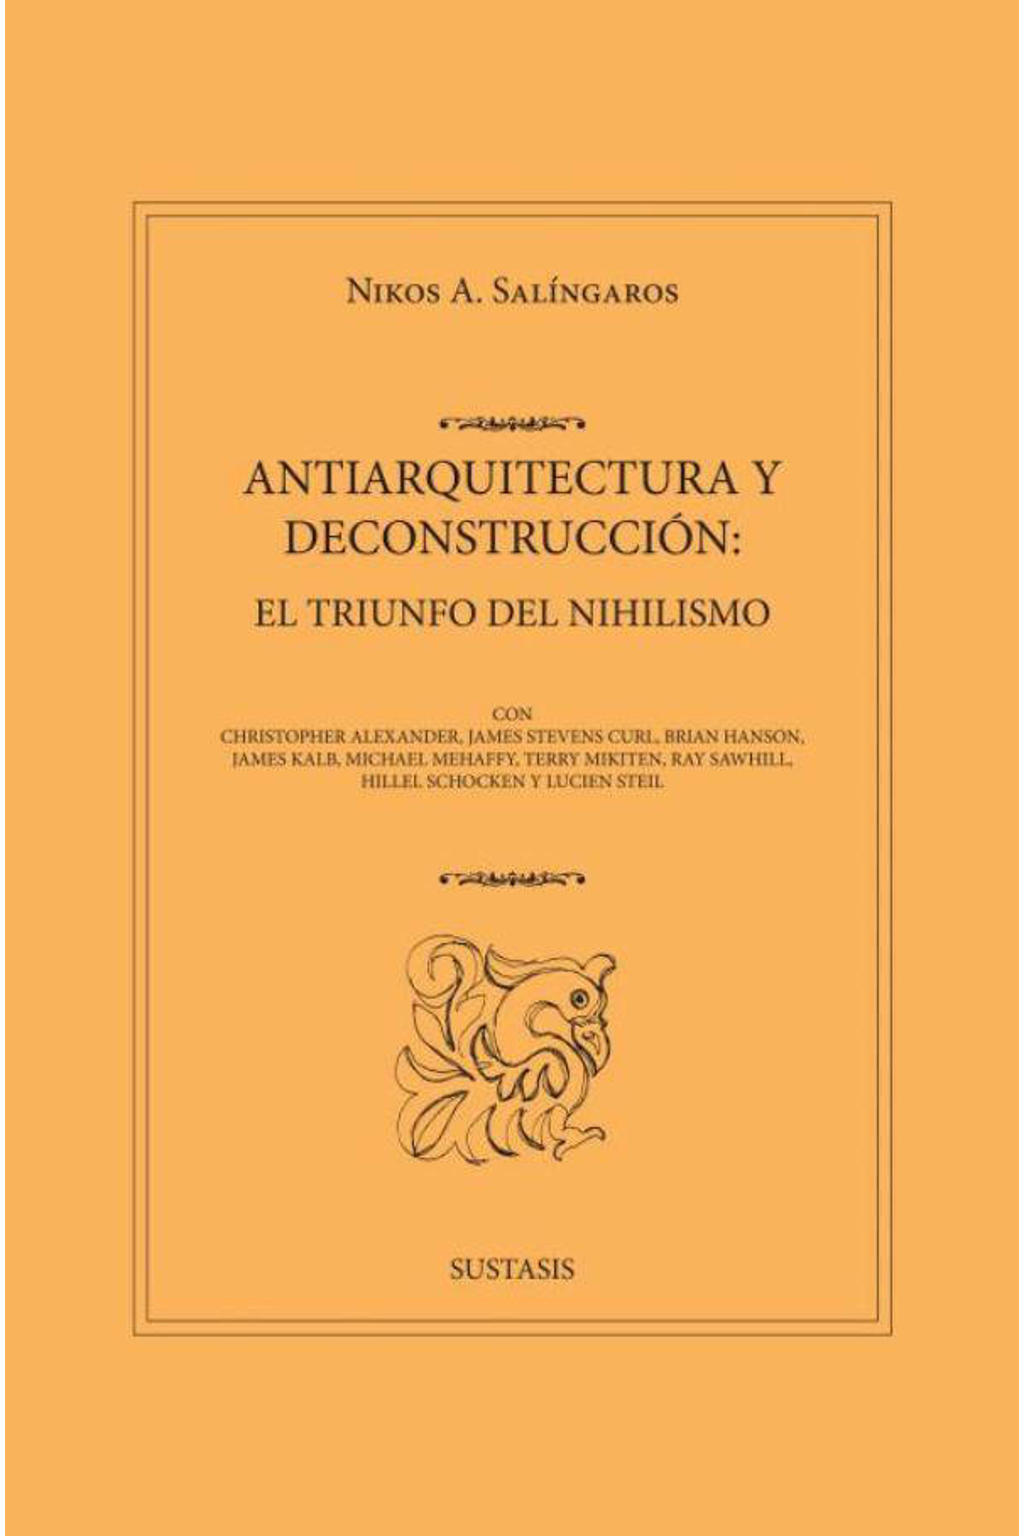 ANTIARQUITECTURA Y DECONSTRUCCIÓN: EL TRIUNFO DEL NIHILISMO - Nikos A. Salingaros